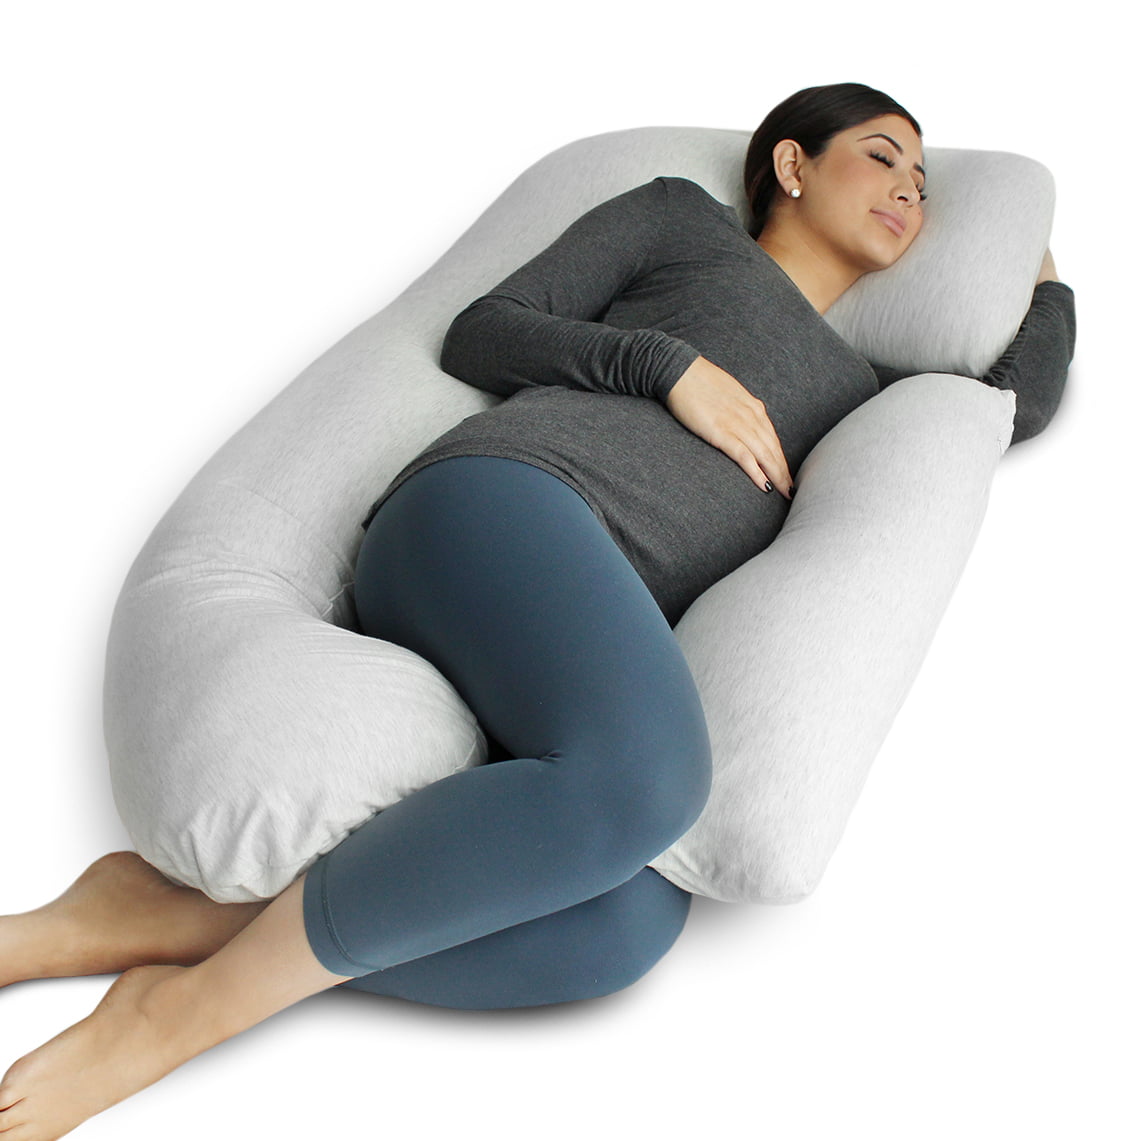 U Shape Pregnancy Pillow Full Body Pillow for Maternity Pregnant Women-Gray 